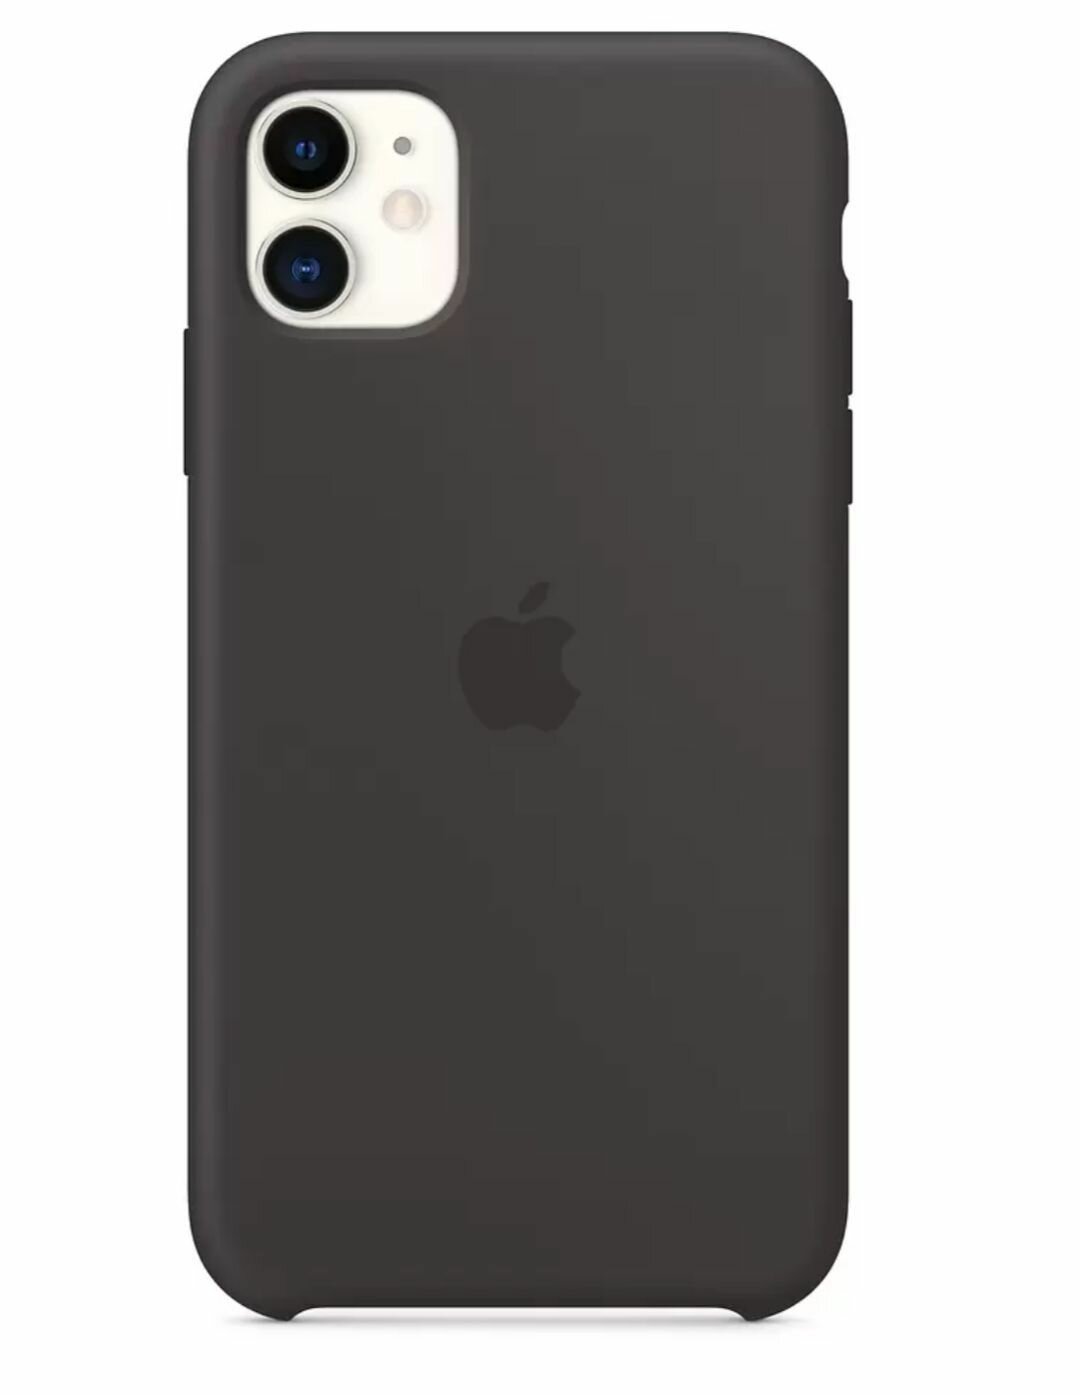 Чехол на Айфон 11 под оригинал чёрный , Apple iPhone 11 замша утолщённый противоударный